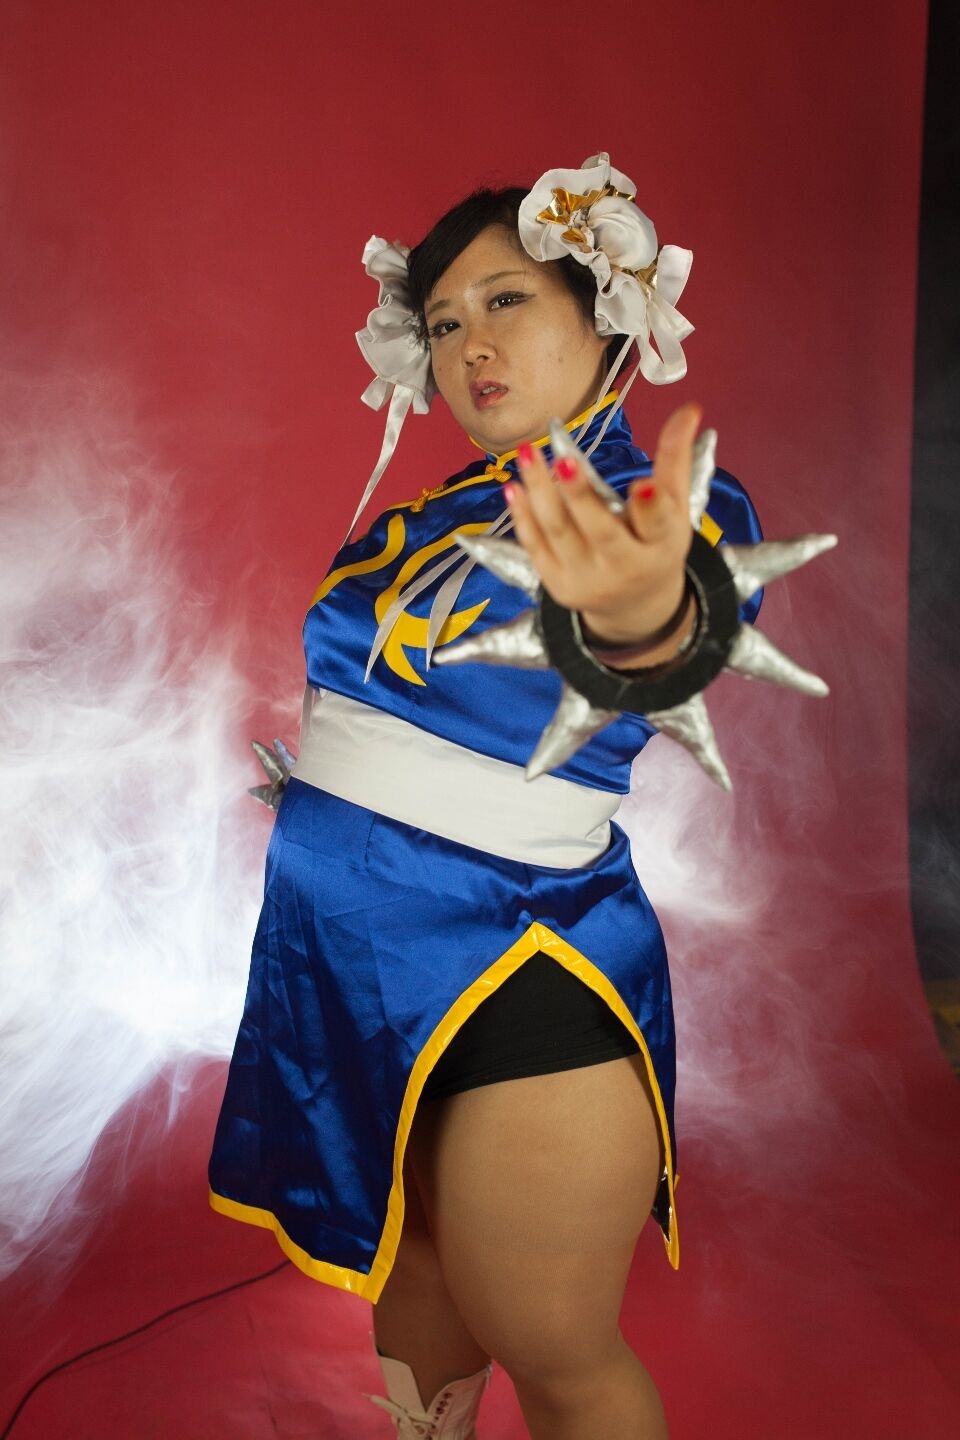 (渡辺さくらん) FIGHT FAT LADY (Sakuran Watanabe) (Mai Shiranui - Fatal Fury) (Chun-Li - Street Fighter) 10